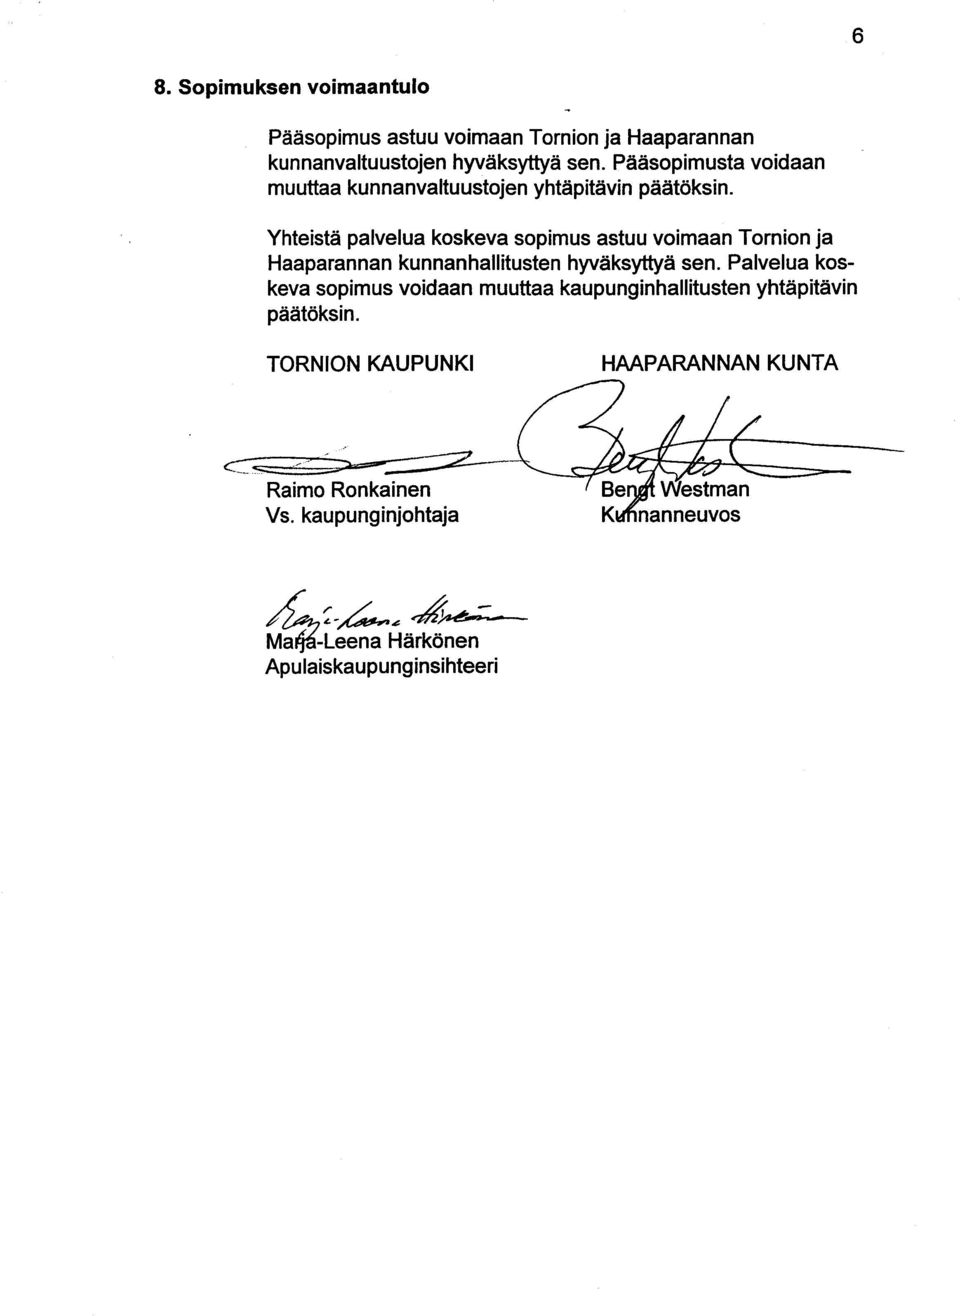 Yhteistä palvelua koskeva sopimus astuu voimaan Tornion ja Haaparannan kunnanhallitusten hyväksyttyä sen.